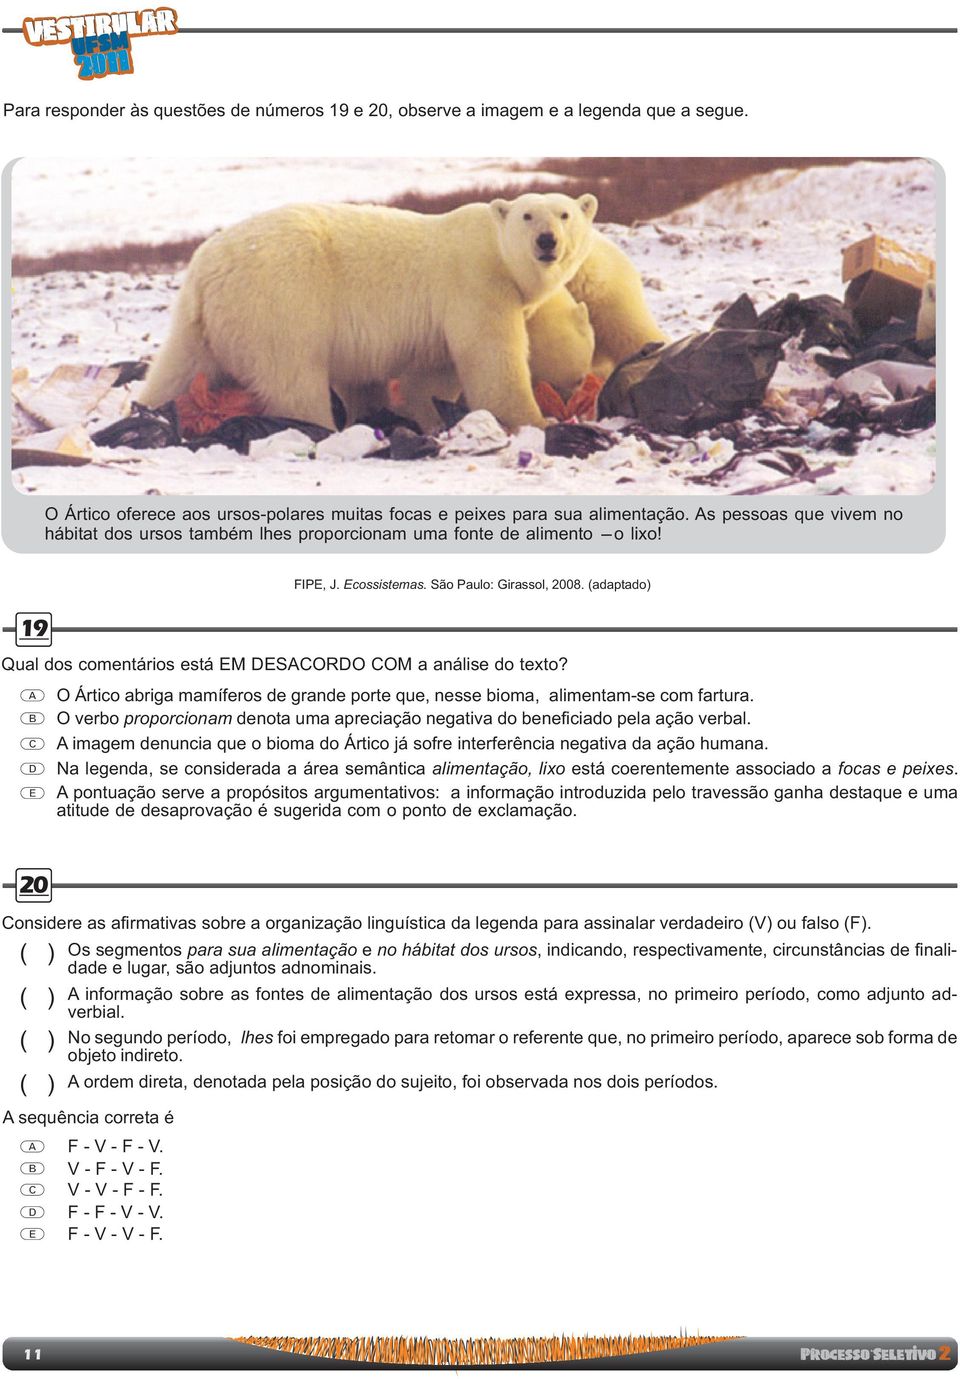 FIP, J cossistemas São Paulo: Girassol, 2008 (adaptado) O Ártico abriga mamíferos de grande porte que, nesse bioma, alimentam-se com fartura O verbo proporcionam denota uma apreciação negativa do